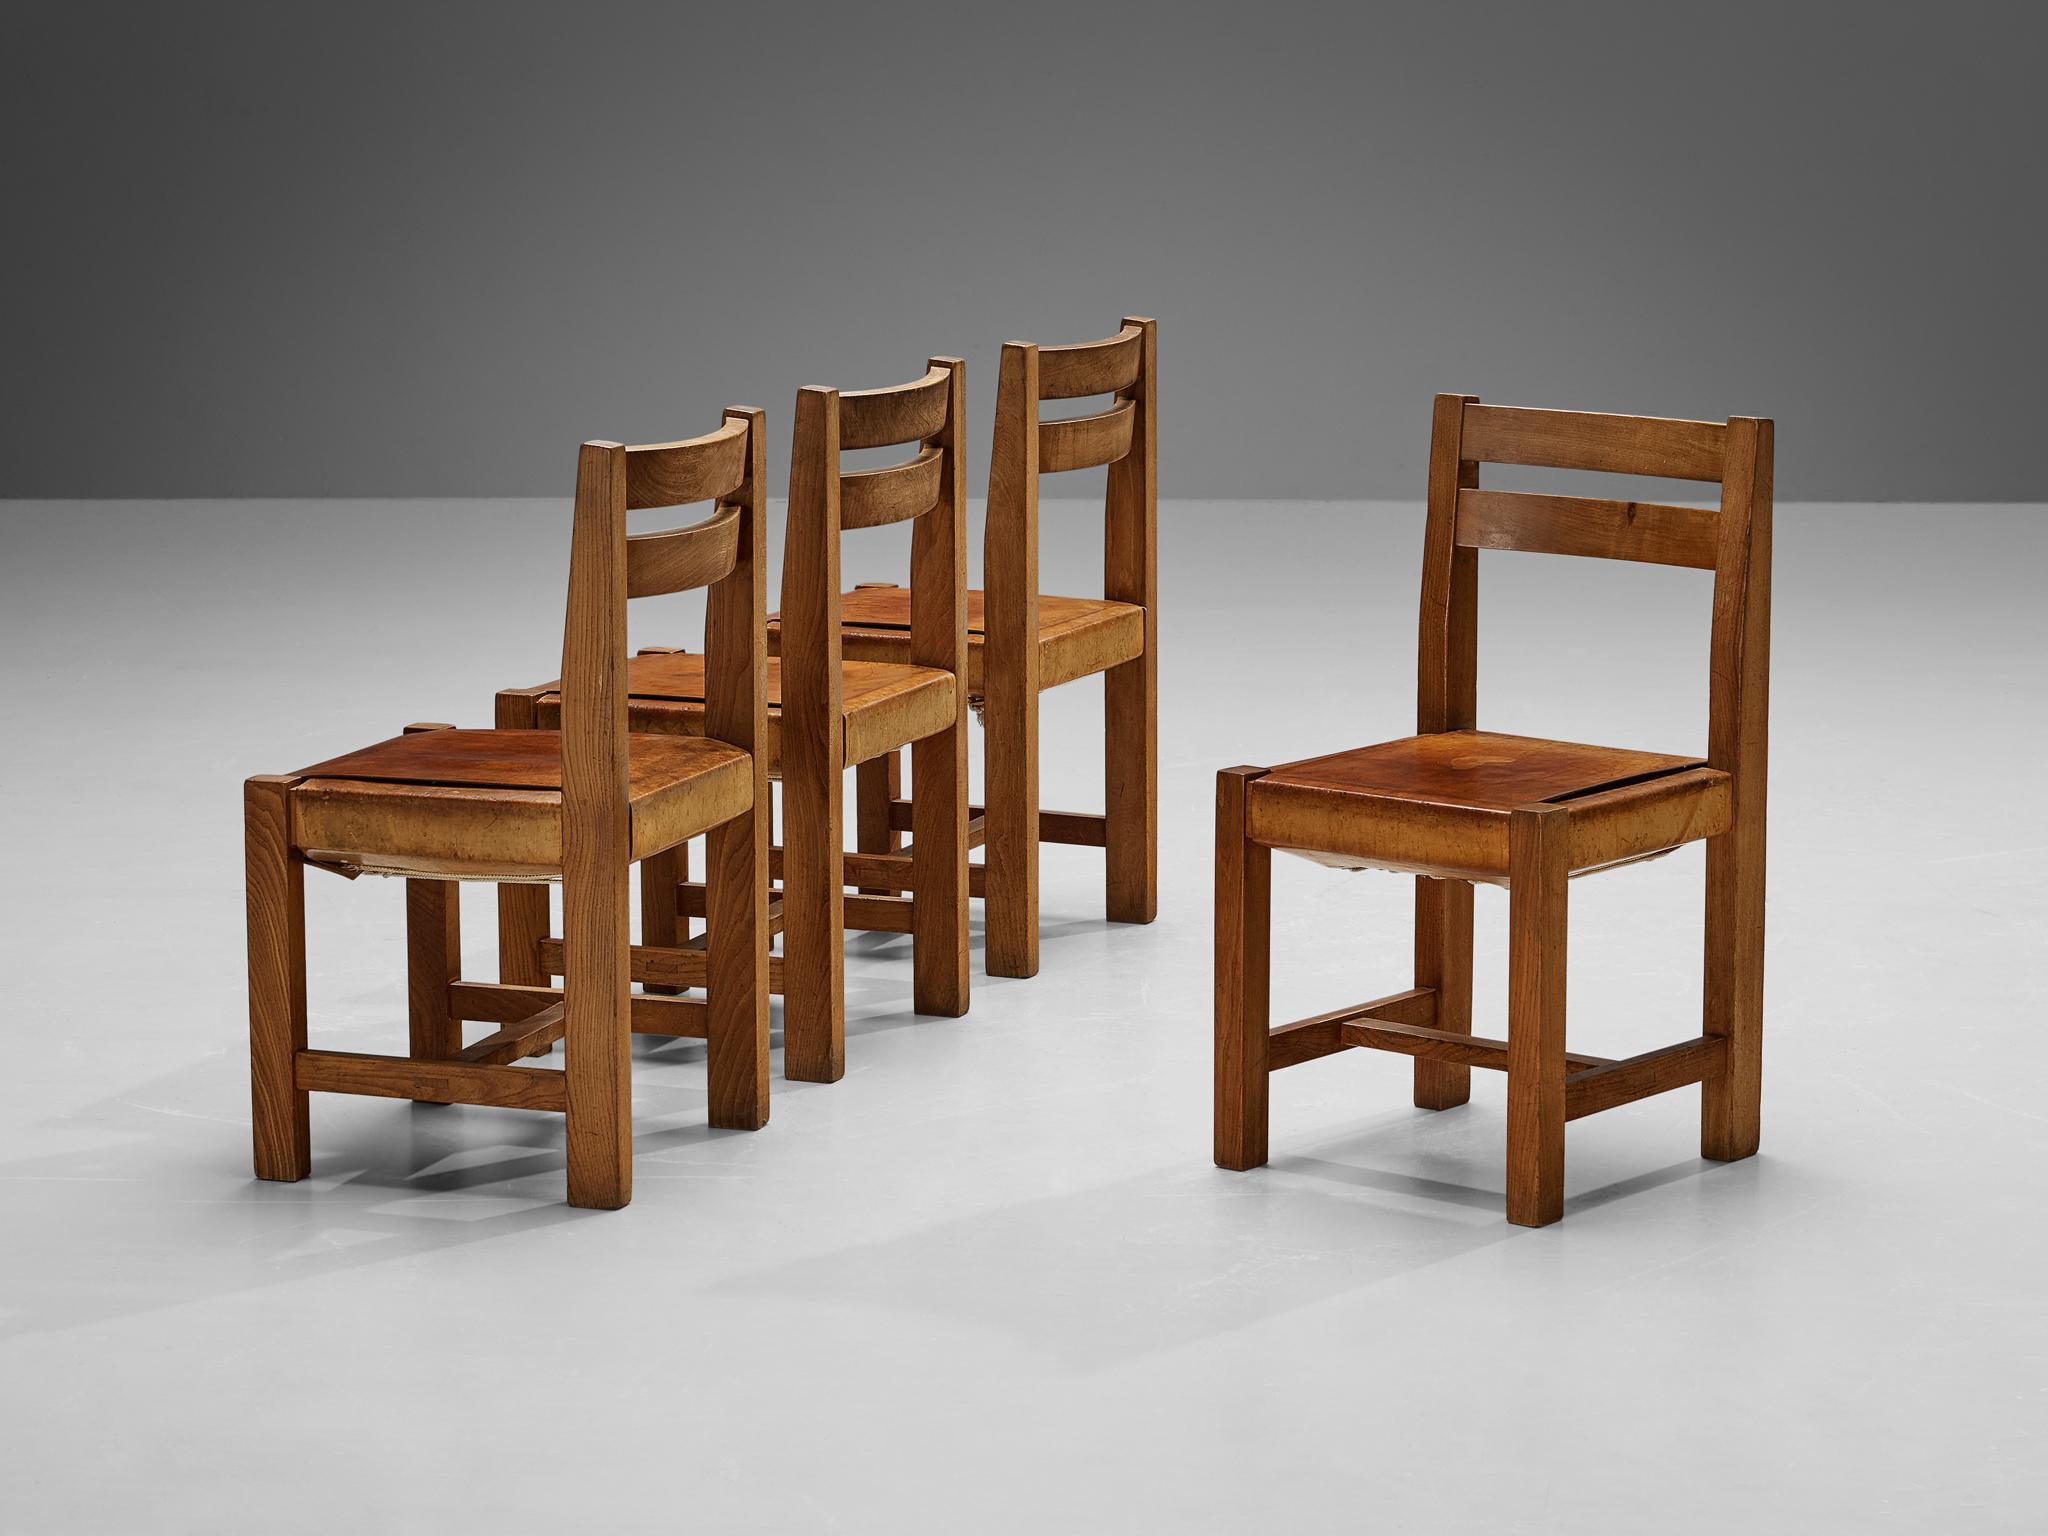 A.C. C., ensemble de quatre chaises de salle à manger, orme, cuir, corde, laiton, France, années 1970

L'Atelier C. Demoyen (Claude de Moyen) s'est fait connaître en tant qu'atelier reconnu pour la réalisation, entre autres, des designs de Pierre